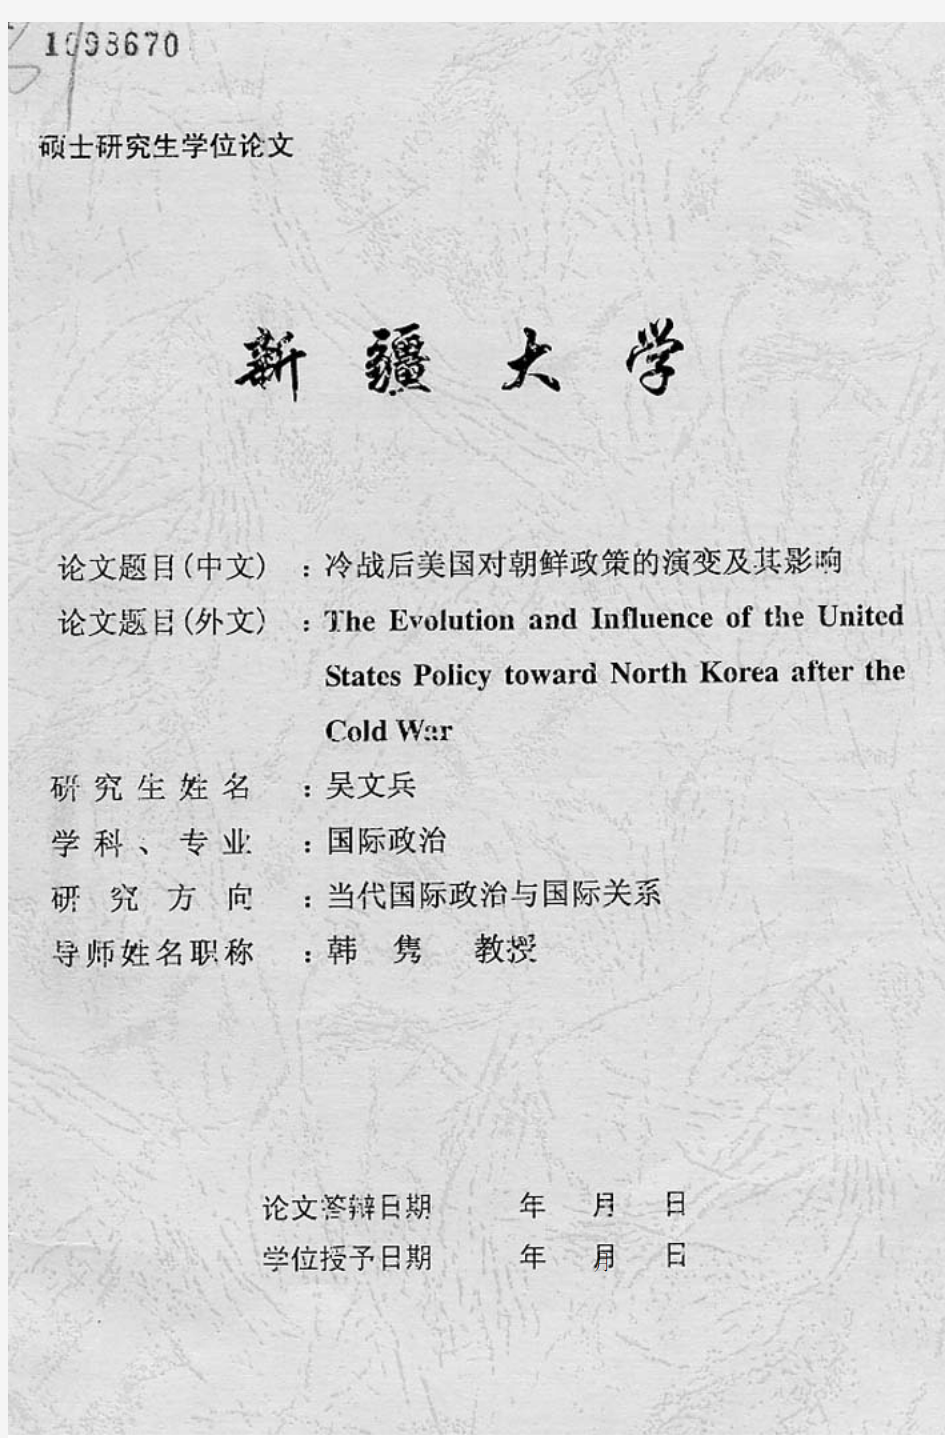 冷战后美国对朝鲜政策的演变及其影响